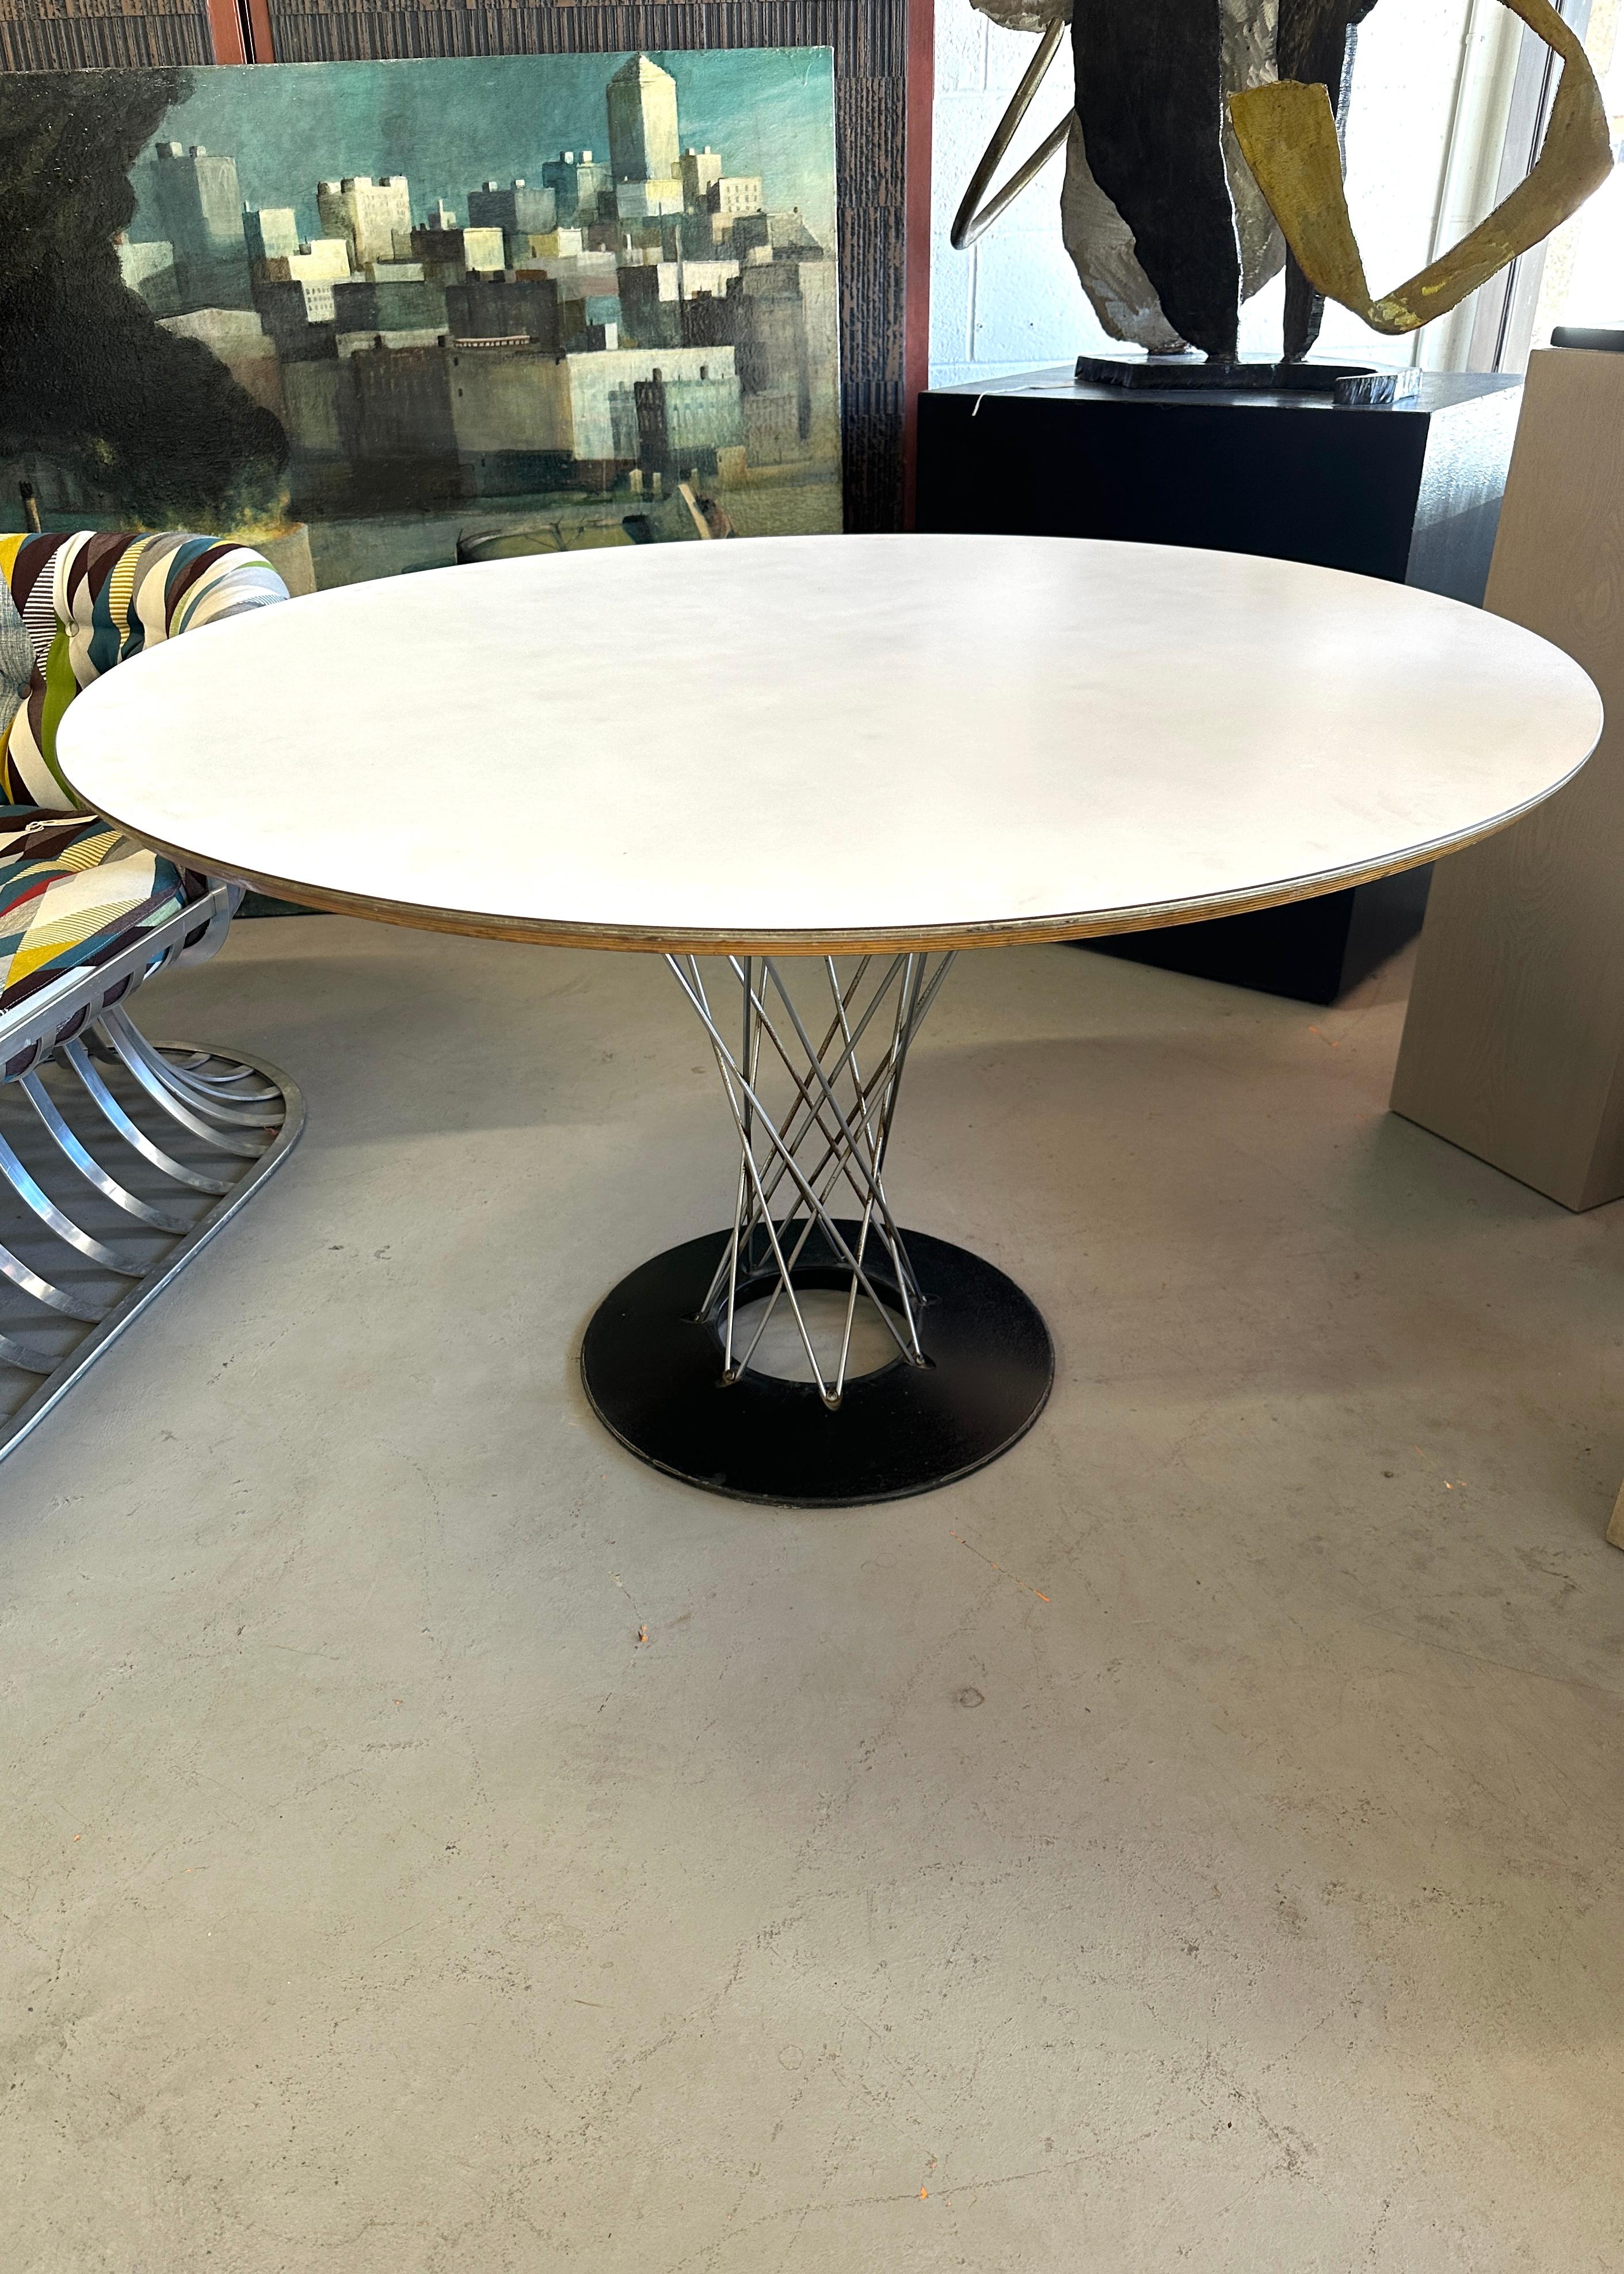 Un bel exemple de table Cyclone Isamu Noguchi pour Label, datant des années 1960, avec l'étiquette 320 Park Avenue en dessous.  Cette table fait un peu moins de 48 pouces de diamètre et Knoll ne fabrique plus de tables de cette taille. Le plateau en